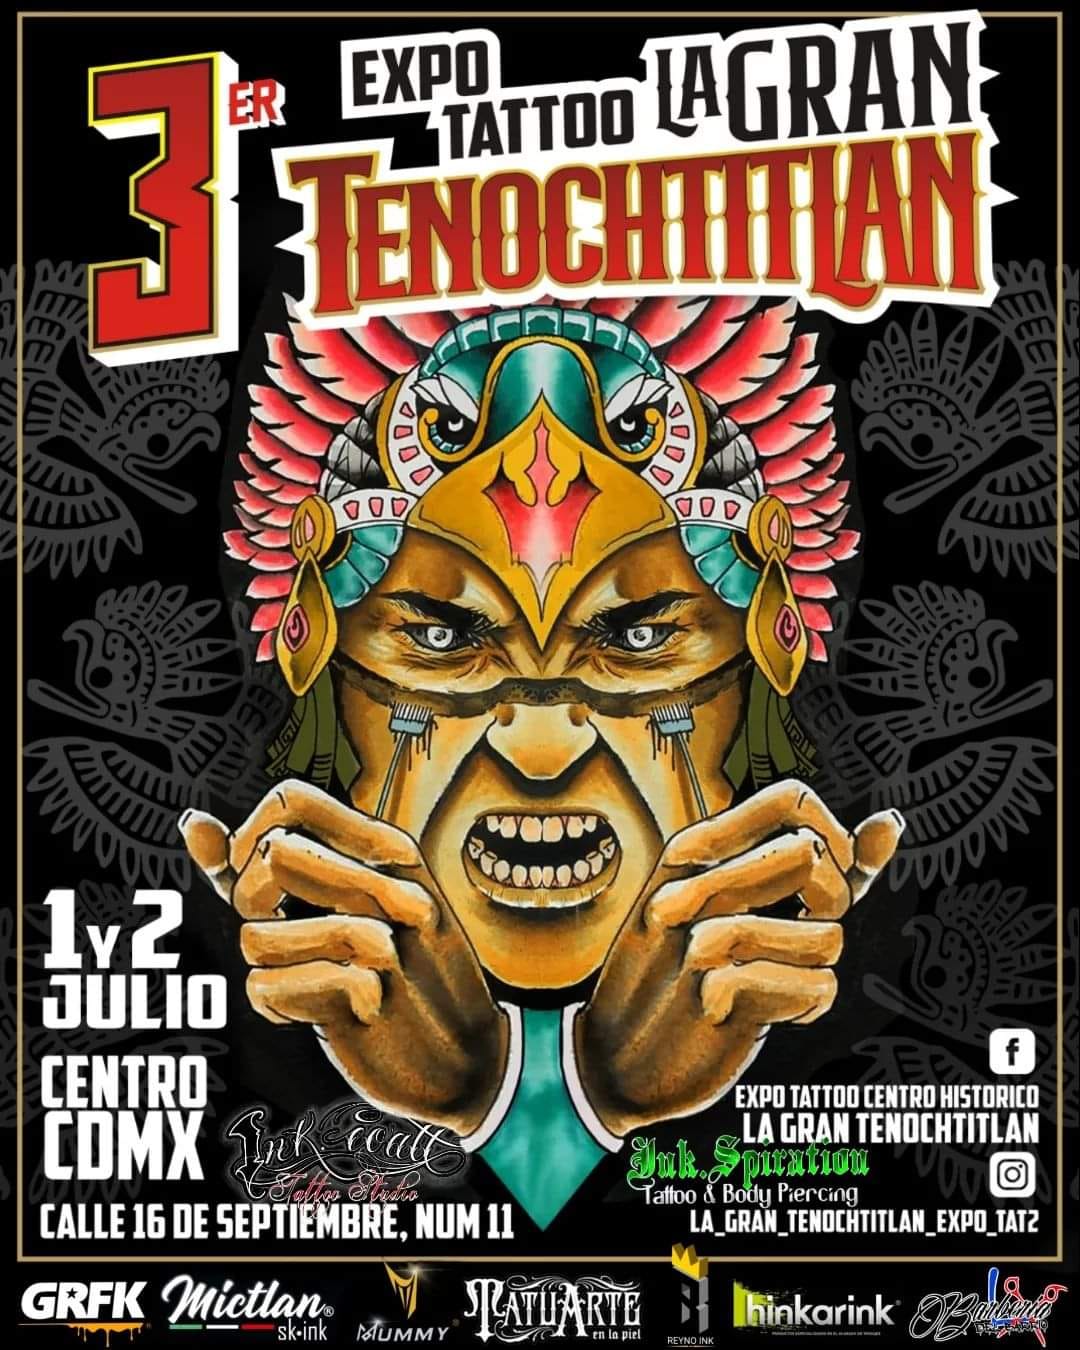 Expo Tattoo La Gran Tenochtitlán 1 y 2 de Julio CDMX